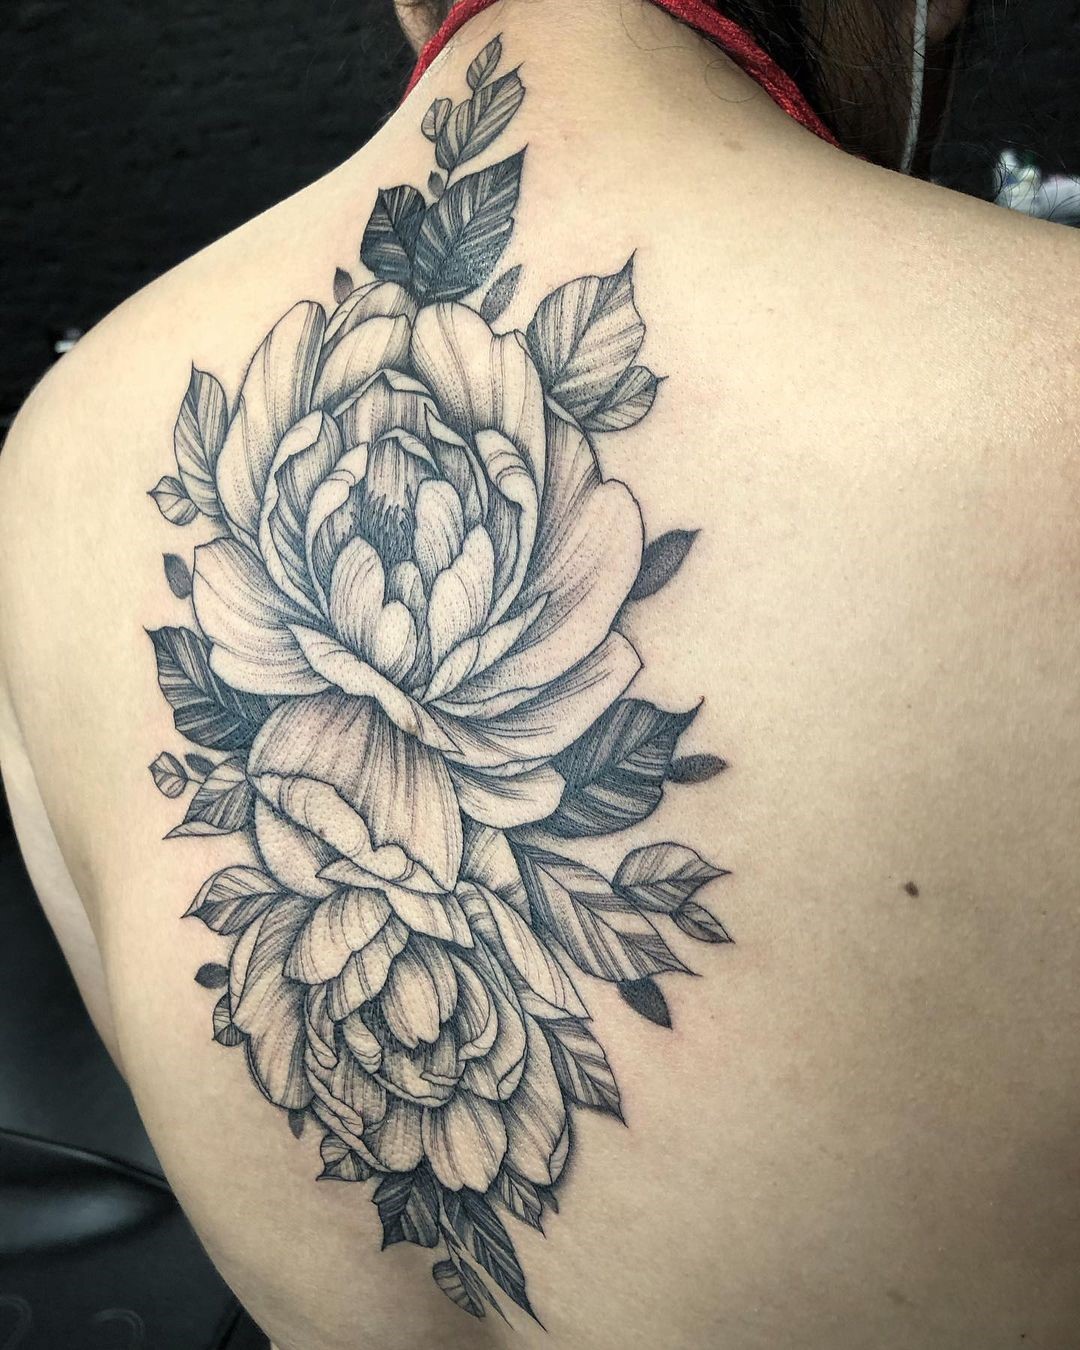 Giant Black Rose Spine Tattoo For Women 